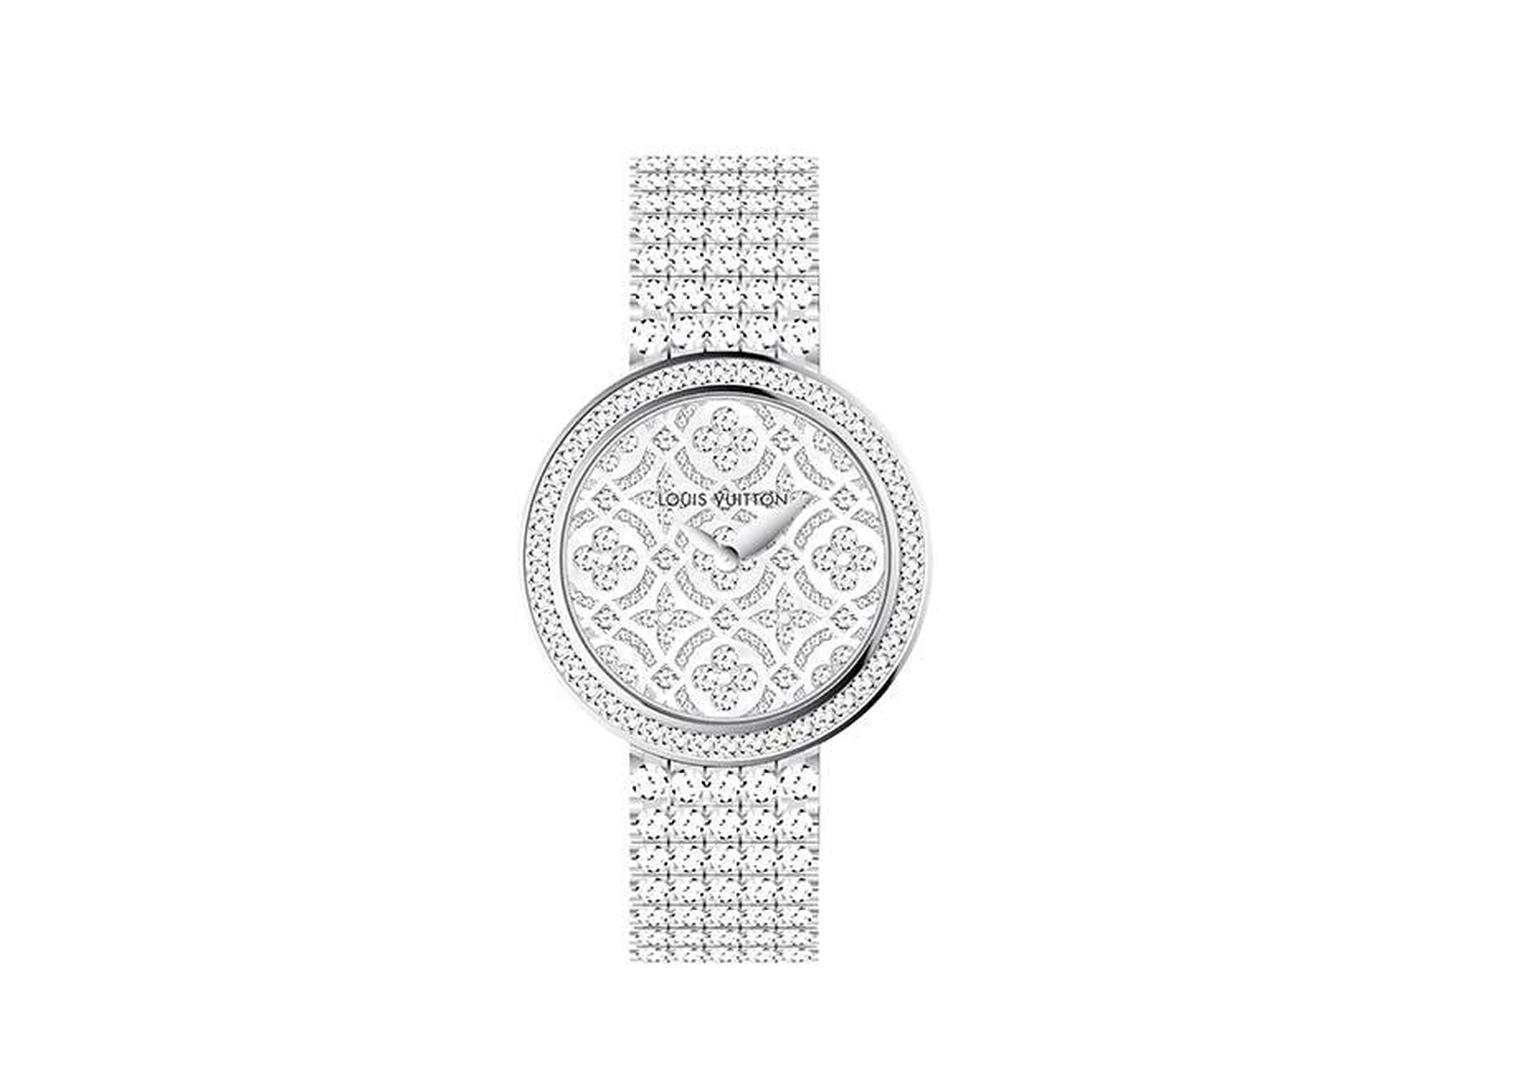 Louis Vuitton Dentelle de Monogram watch with a diamond-set dial and bezel and an all-diamond ‘rivière’ bracelet.